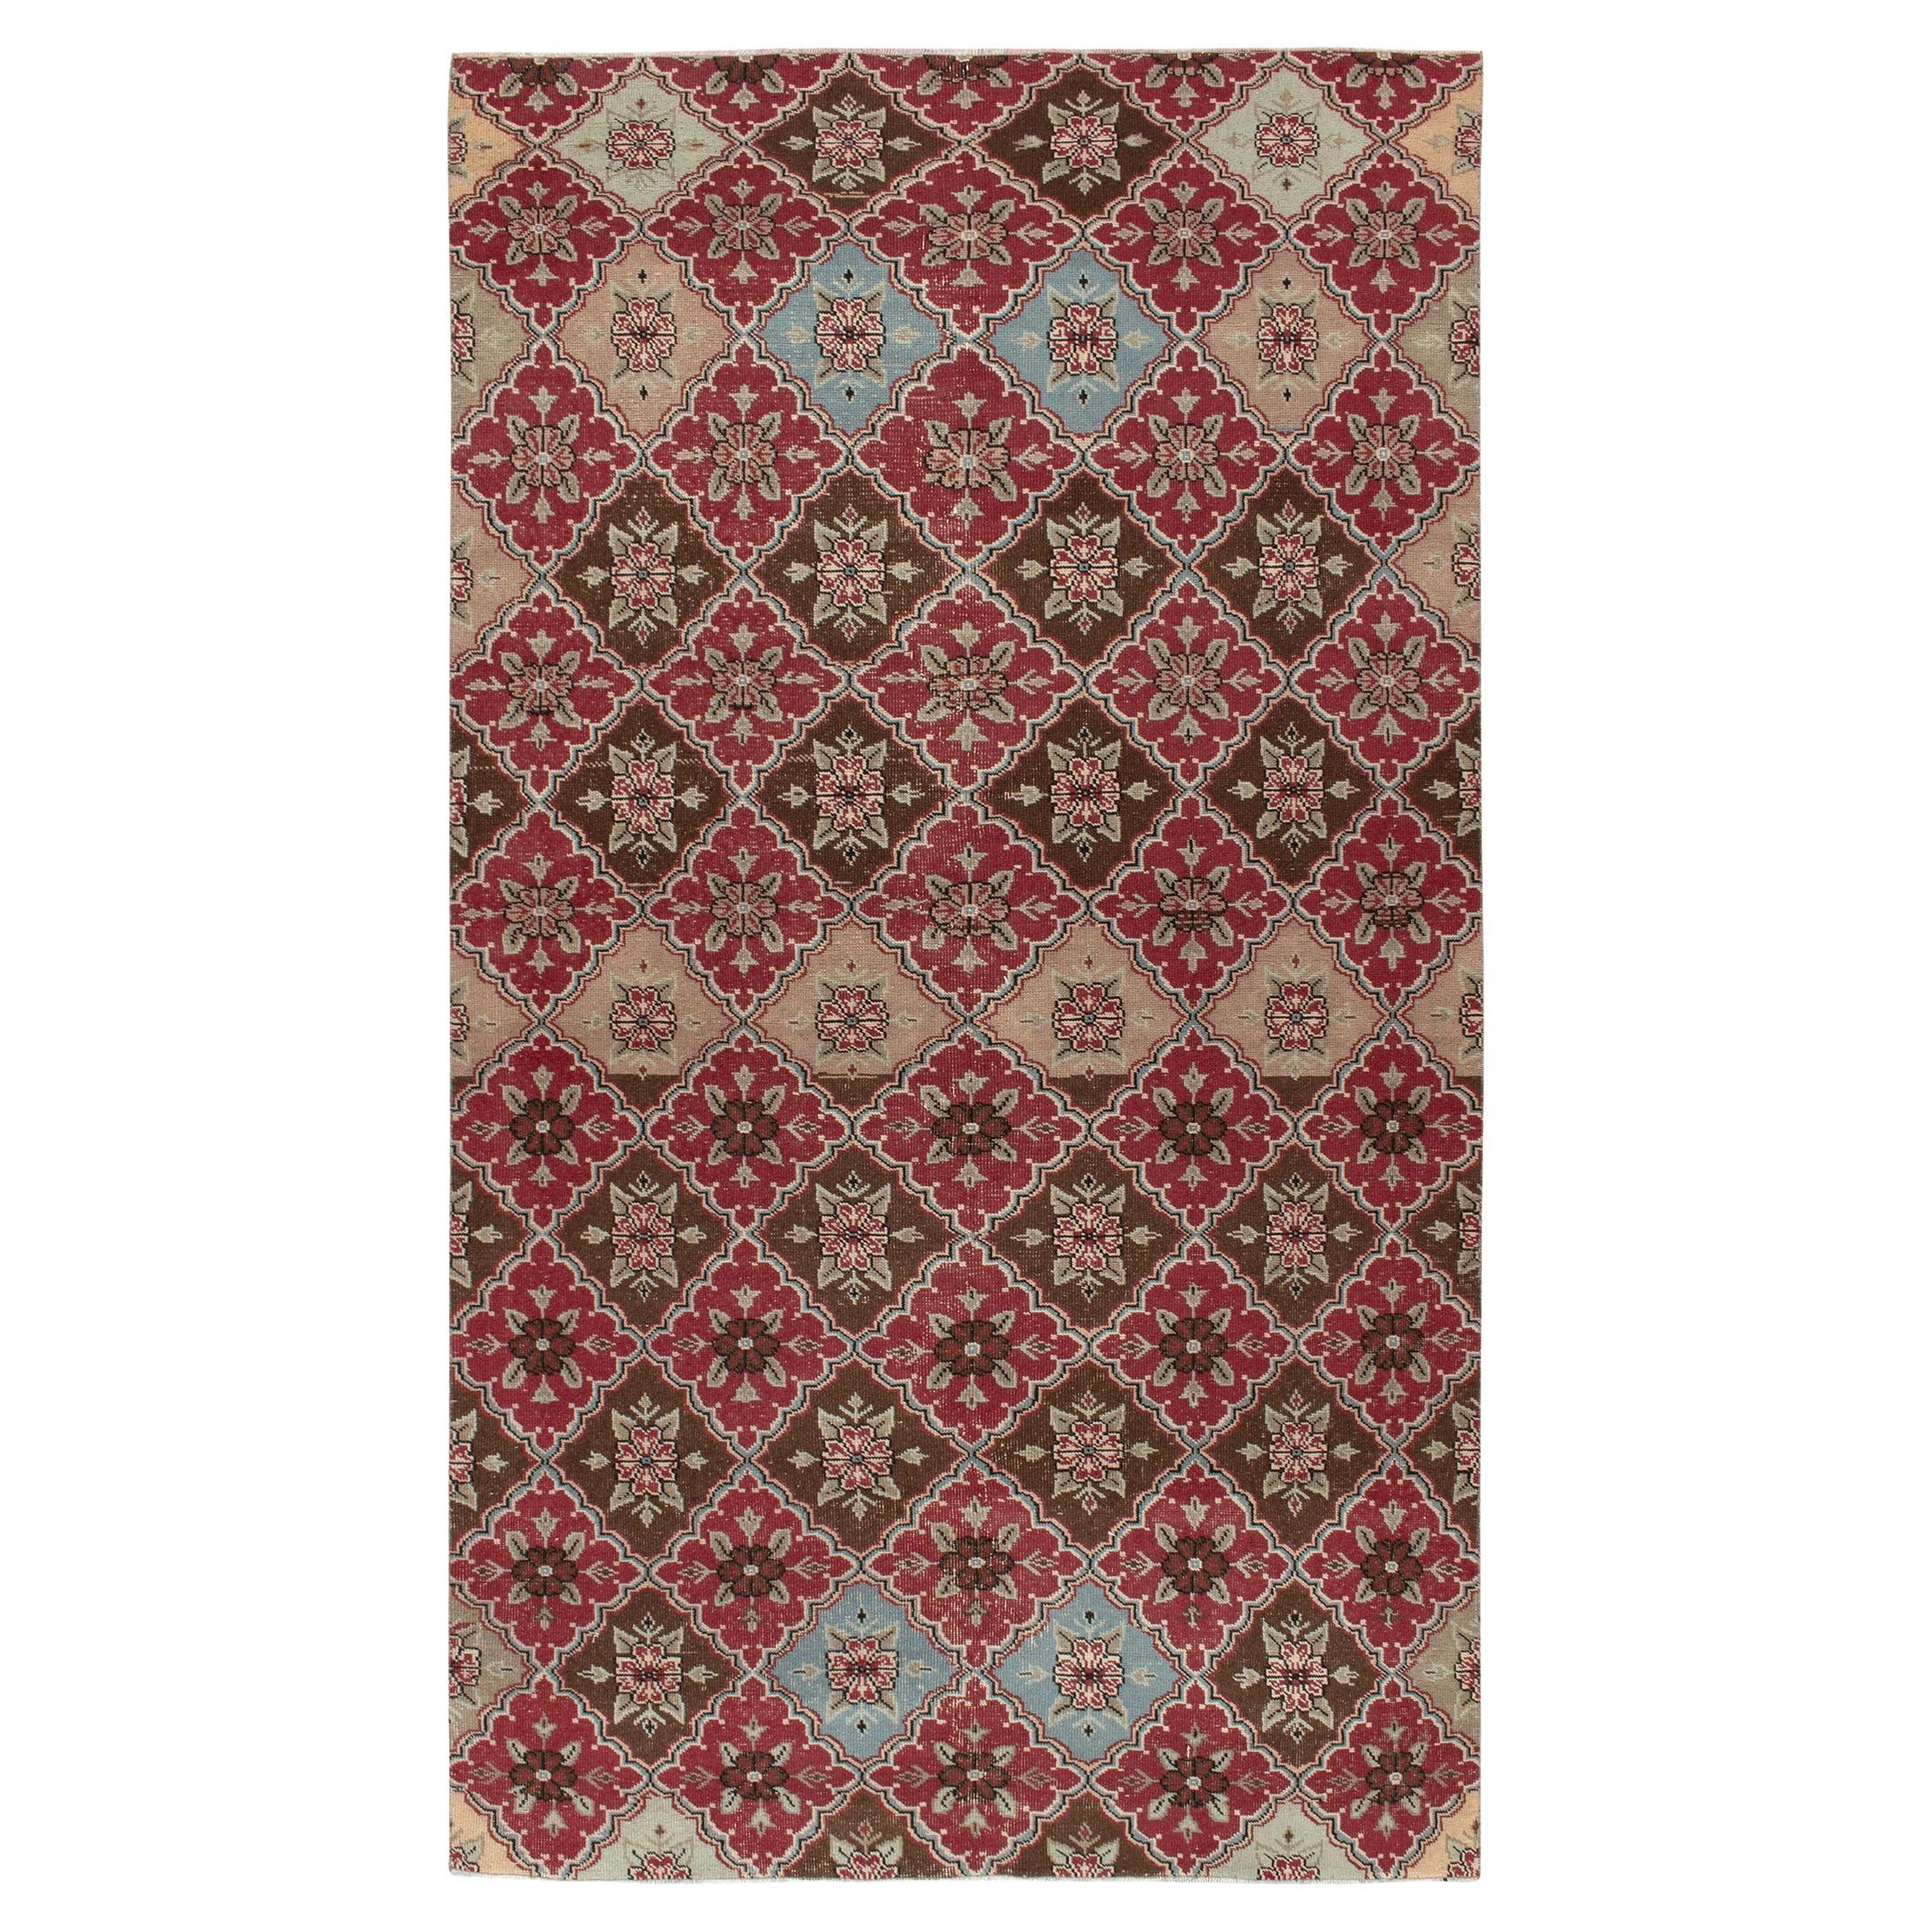 1960s Vintage Deco Rug in Red, Beige-Brown Floral Trellis Pattern by Rug & Kilim